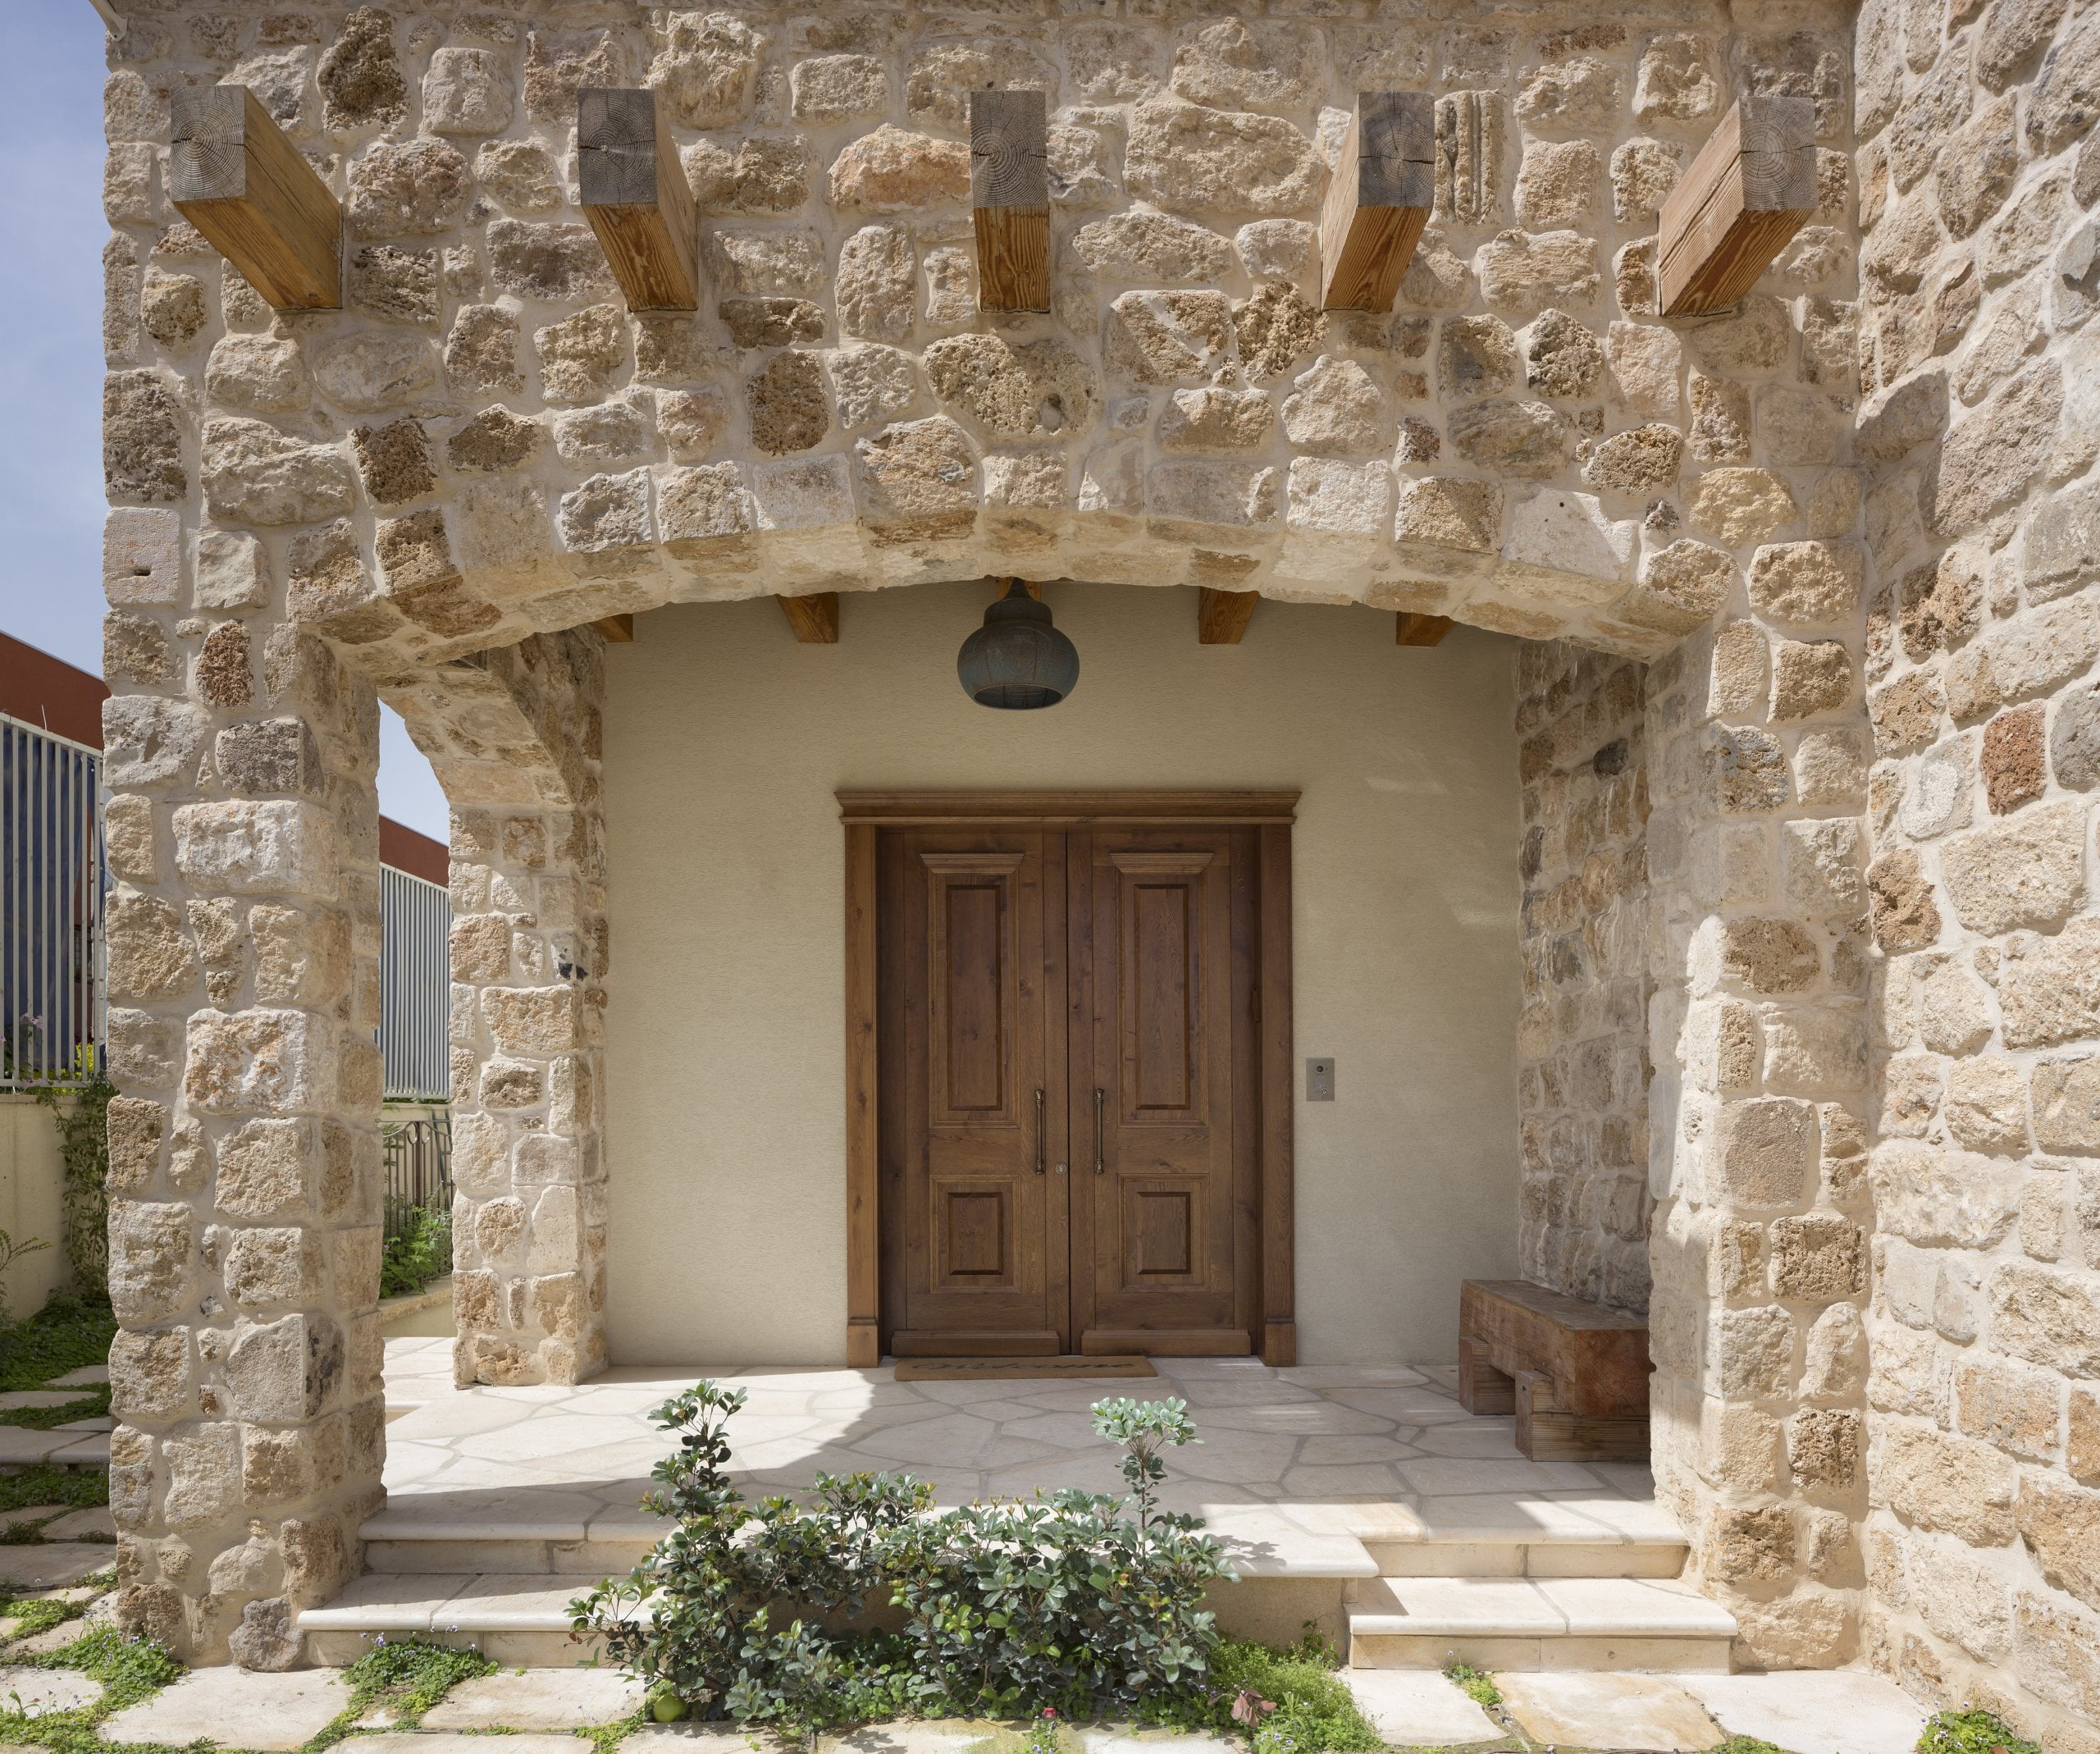 עיצוב ותכנון כניסה לבית פרטי בסגנון ירושלמי